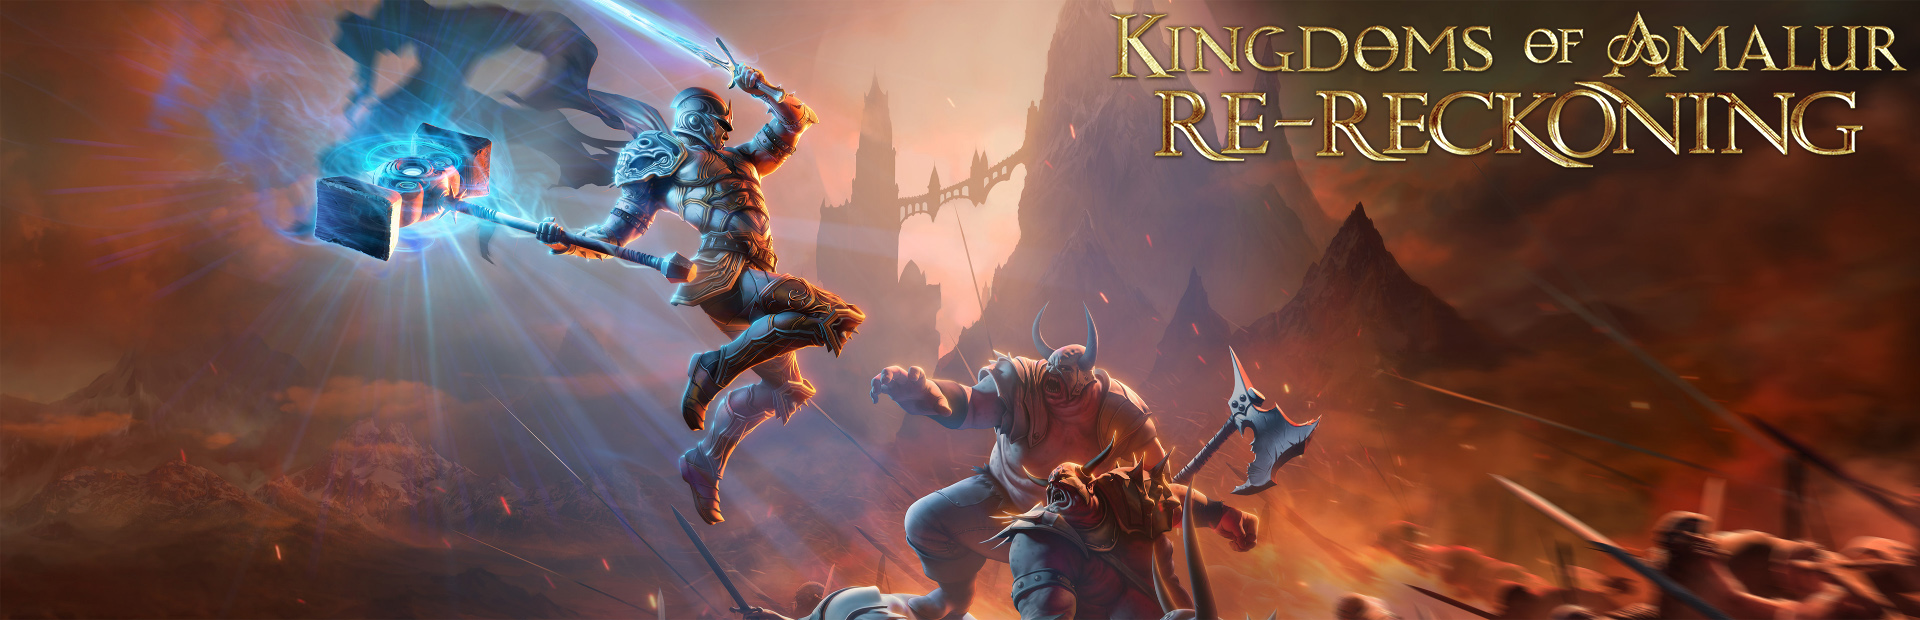 دانلود بازی Kingdoms of Amalur: Re-Reckoning برای کامپیوتر | گیمباتو